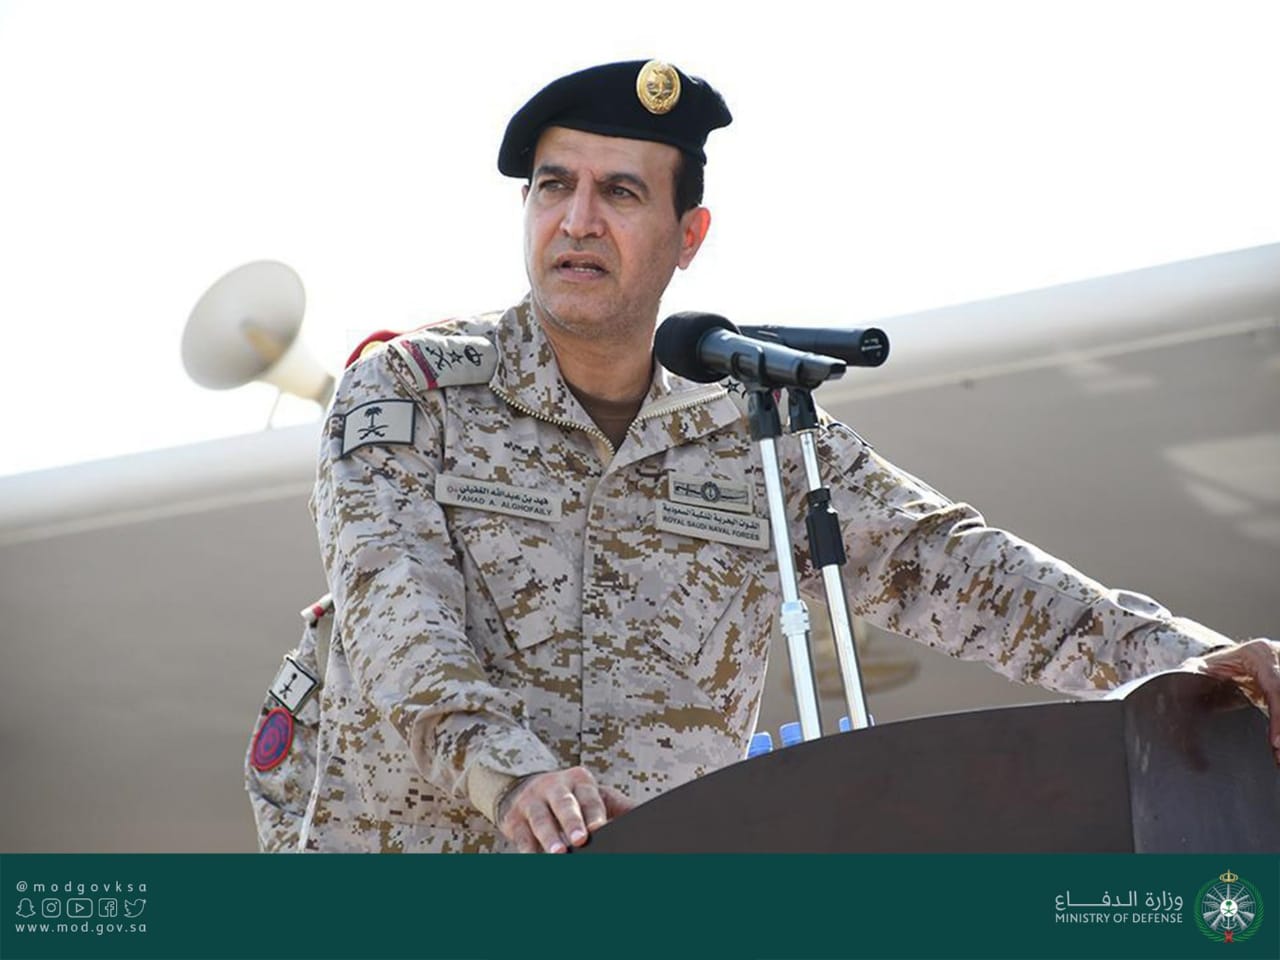 القوات البحرية تحتفل بتخريج الدفعة 37 من طلبة كلية الملك فهد